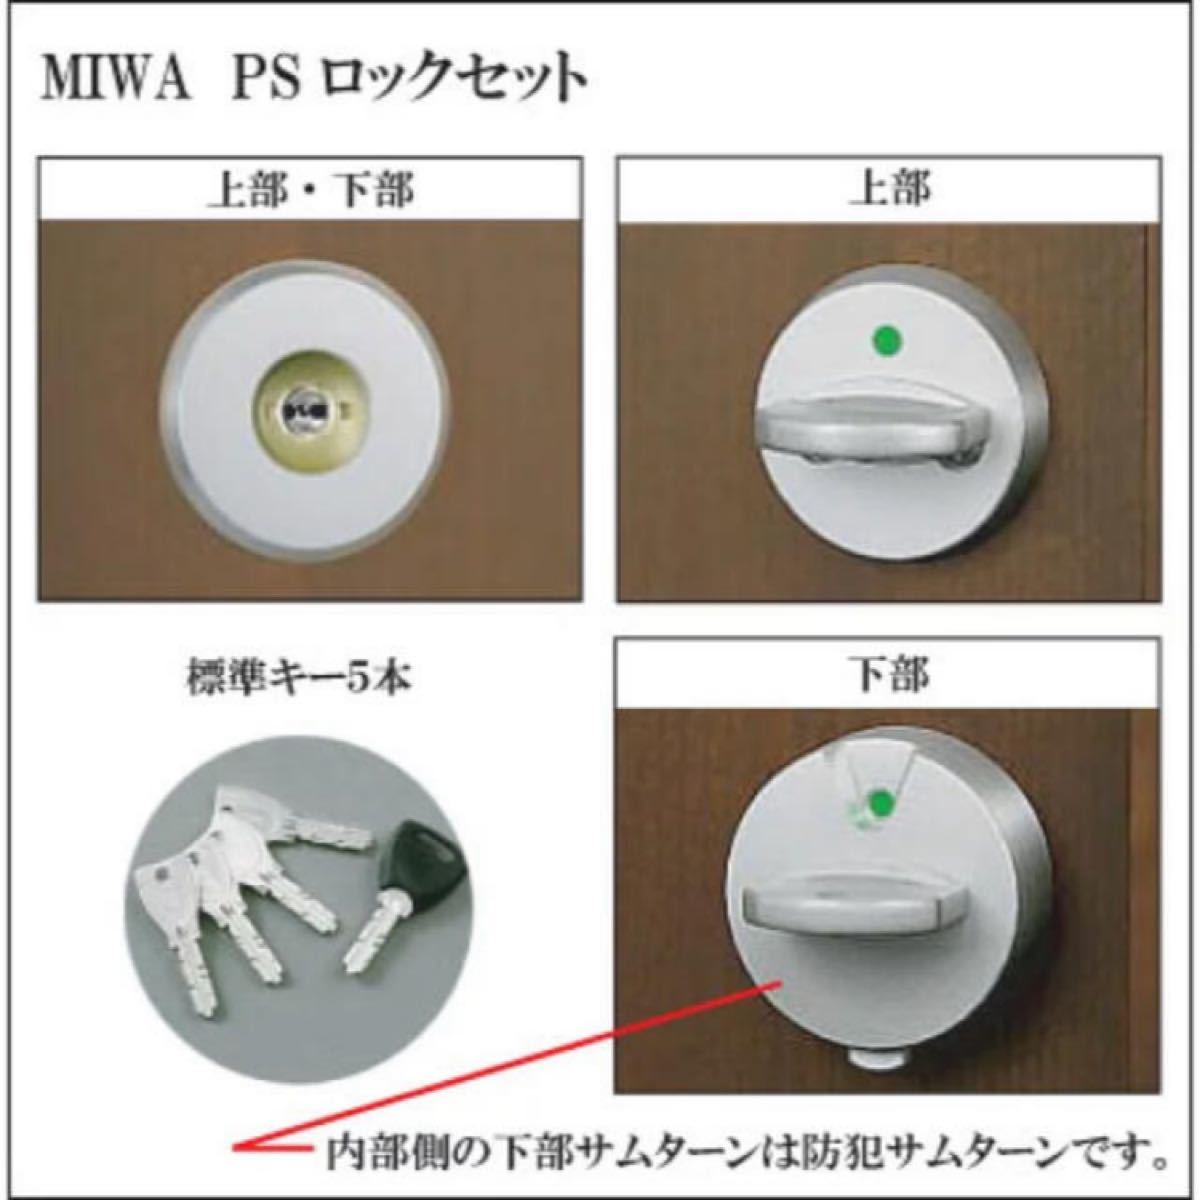 MIWA FDG MCY513 シリンダー 美和ロック 鍵 交換用シリンダー